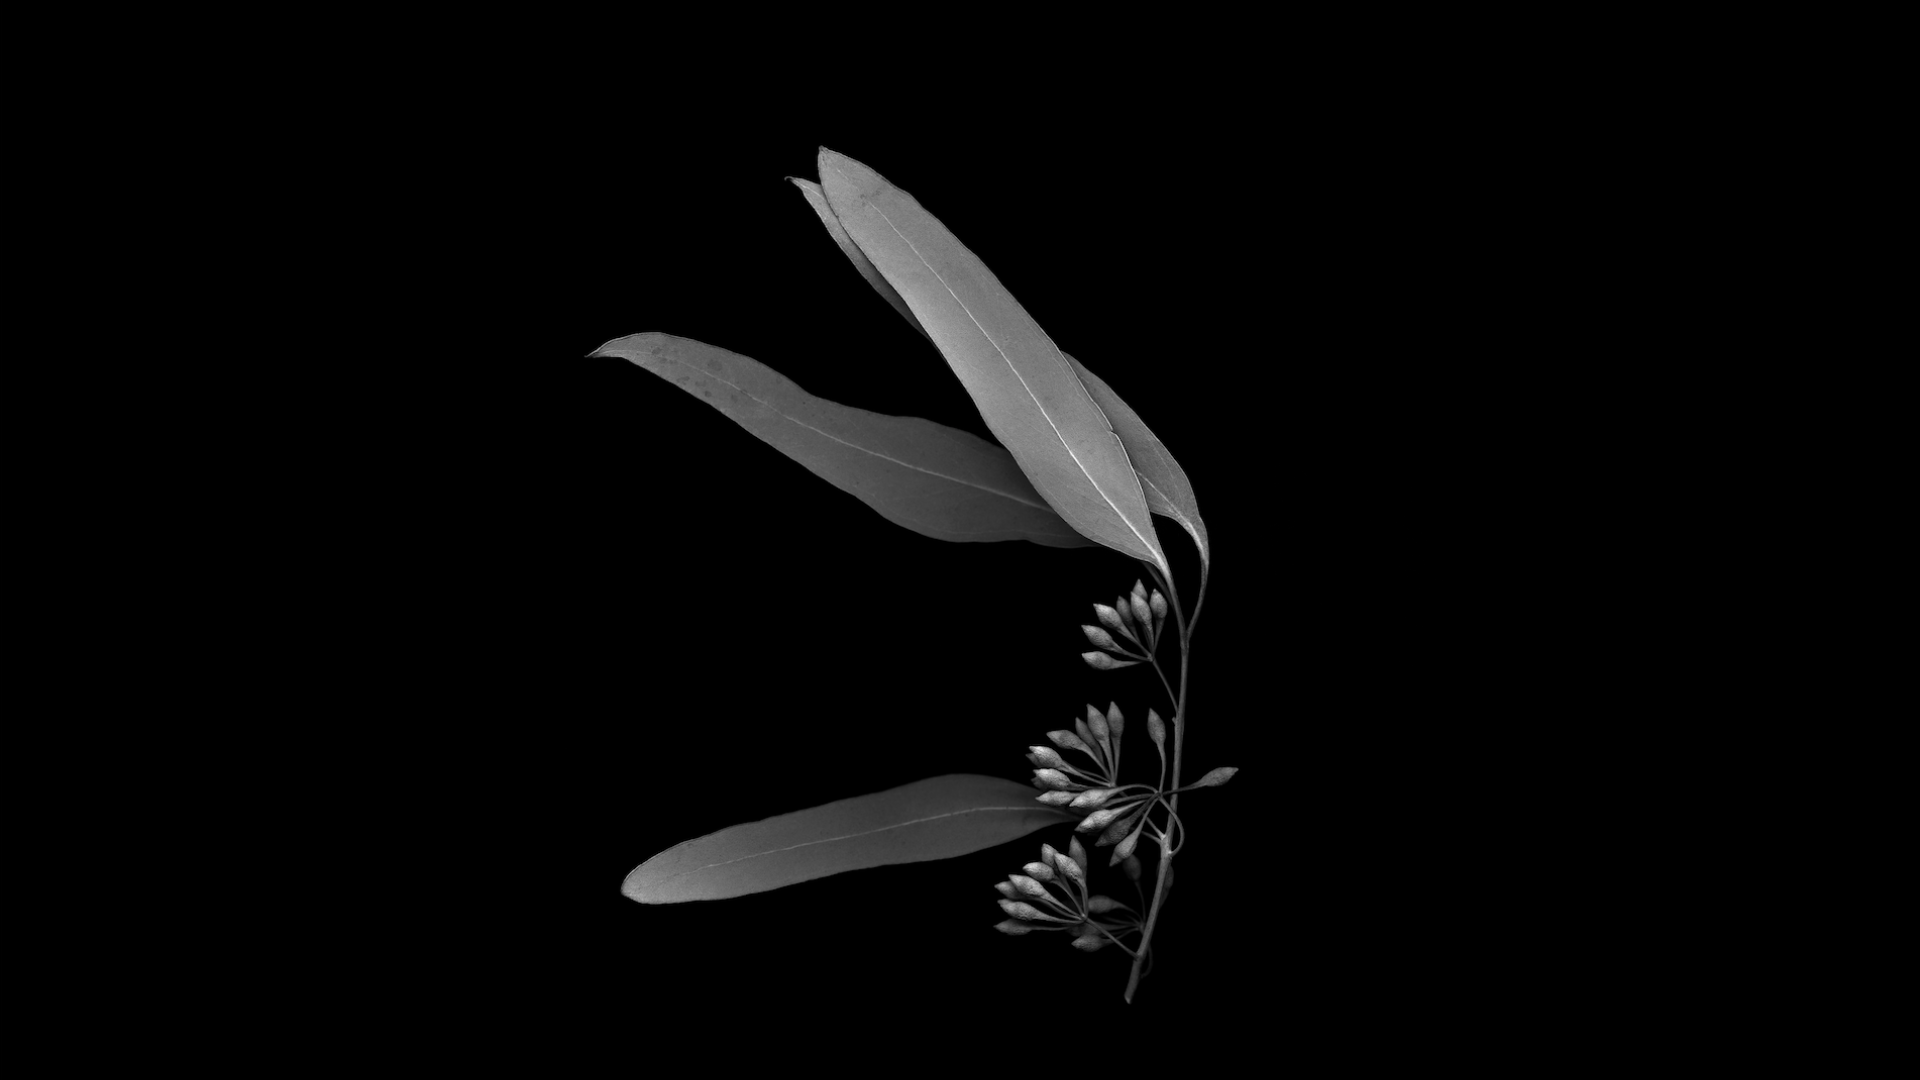 photo noir et blanc de clement verger